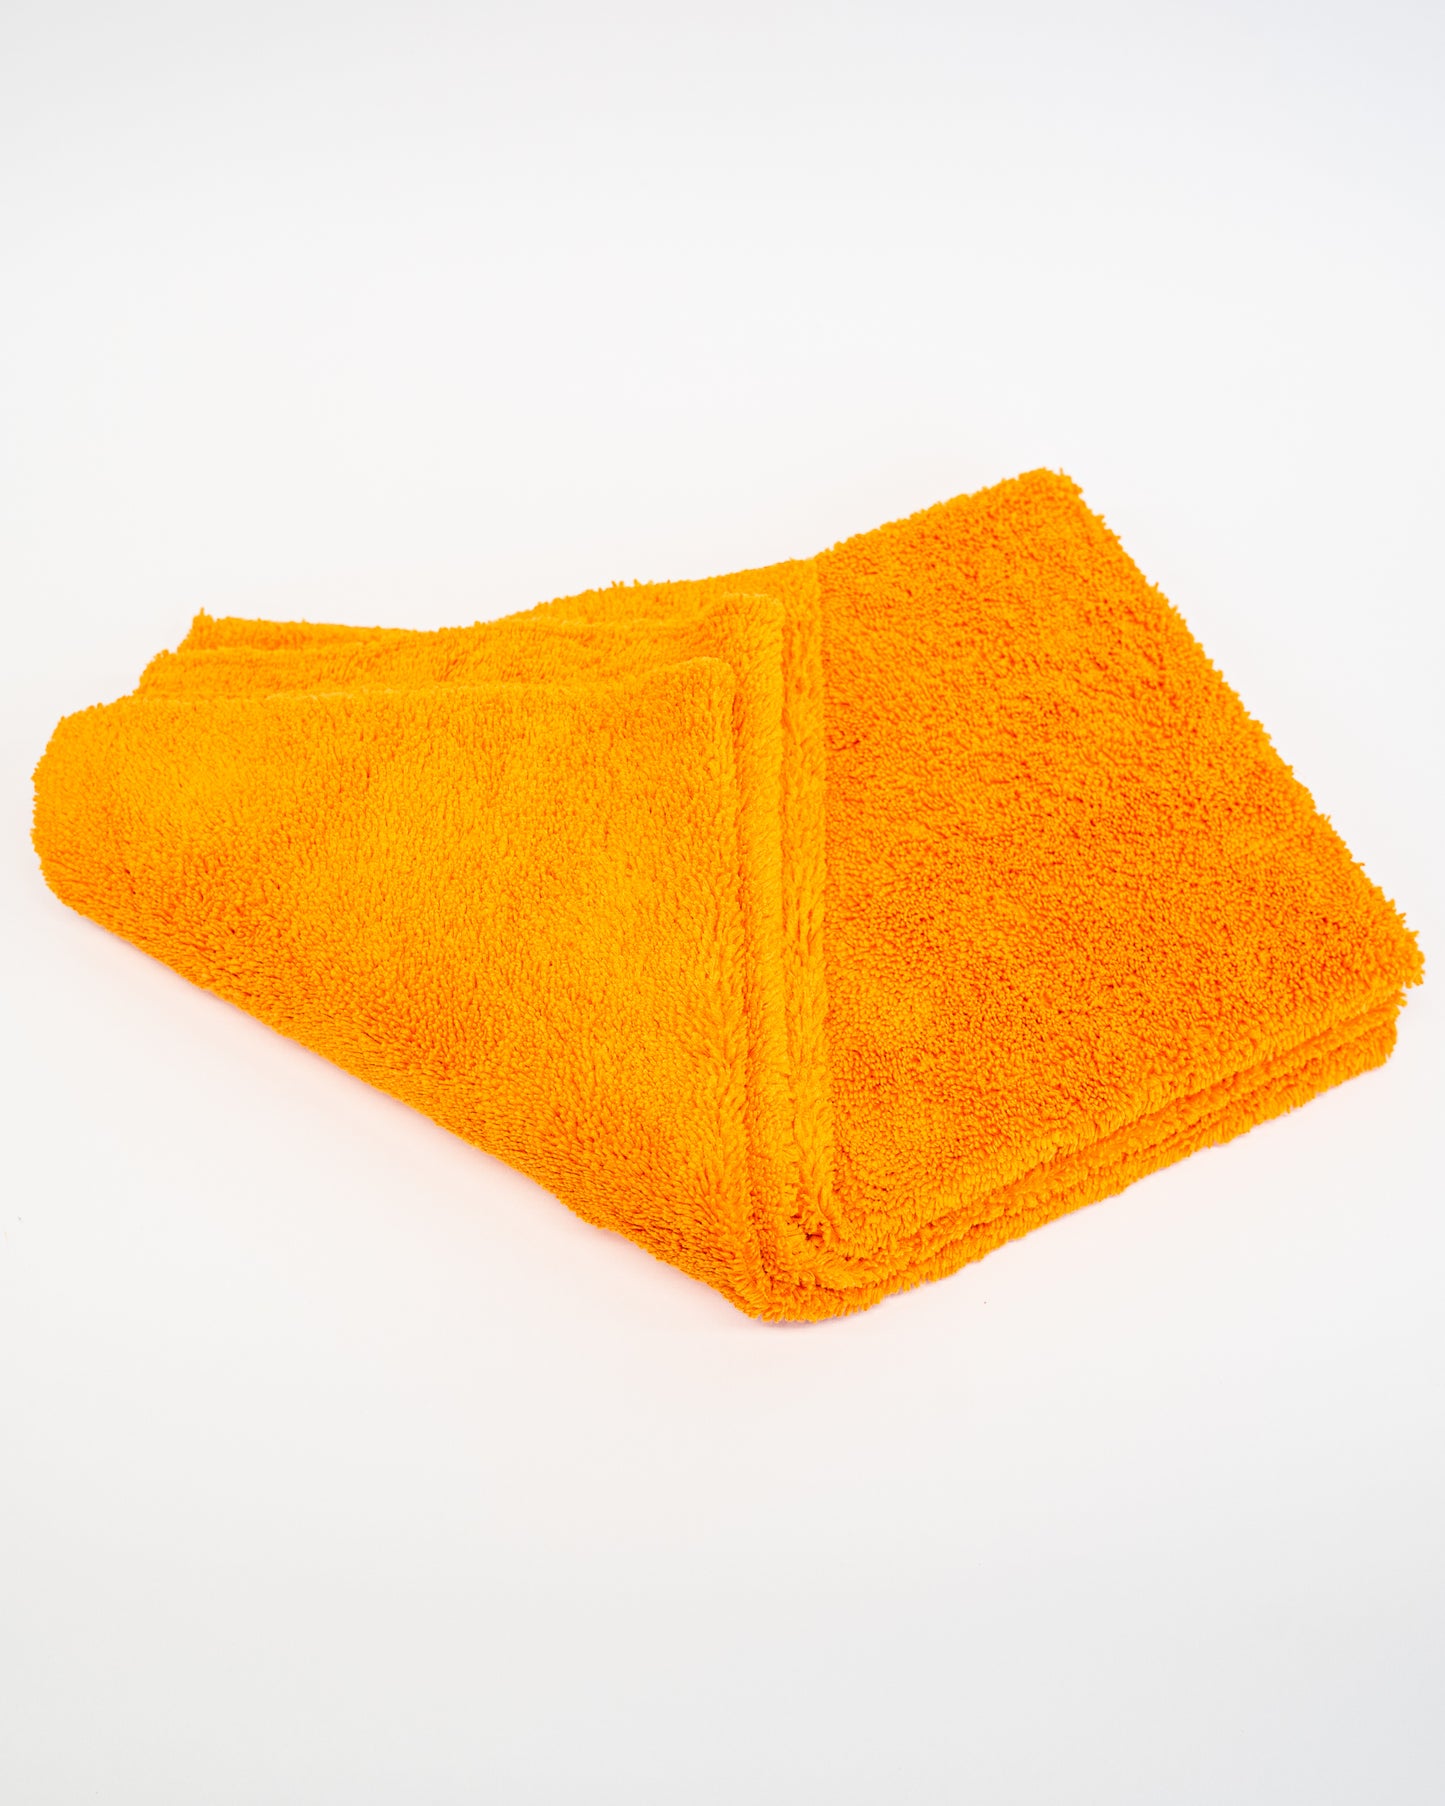 Duplex Edgeless Cloth 3 Pack - Orange